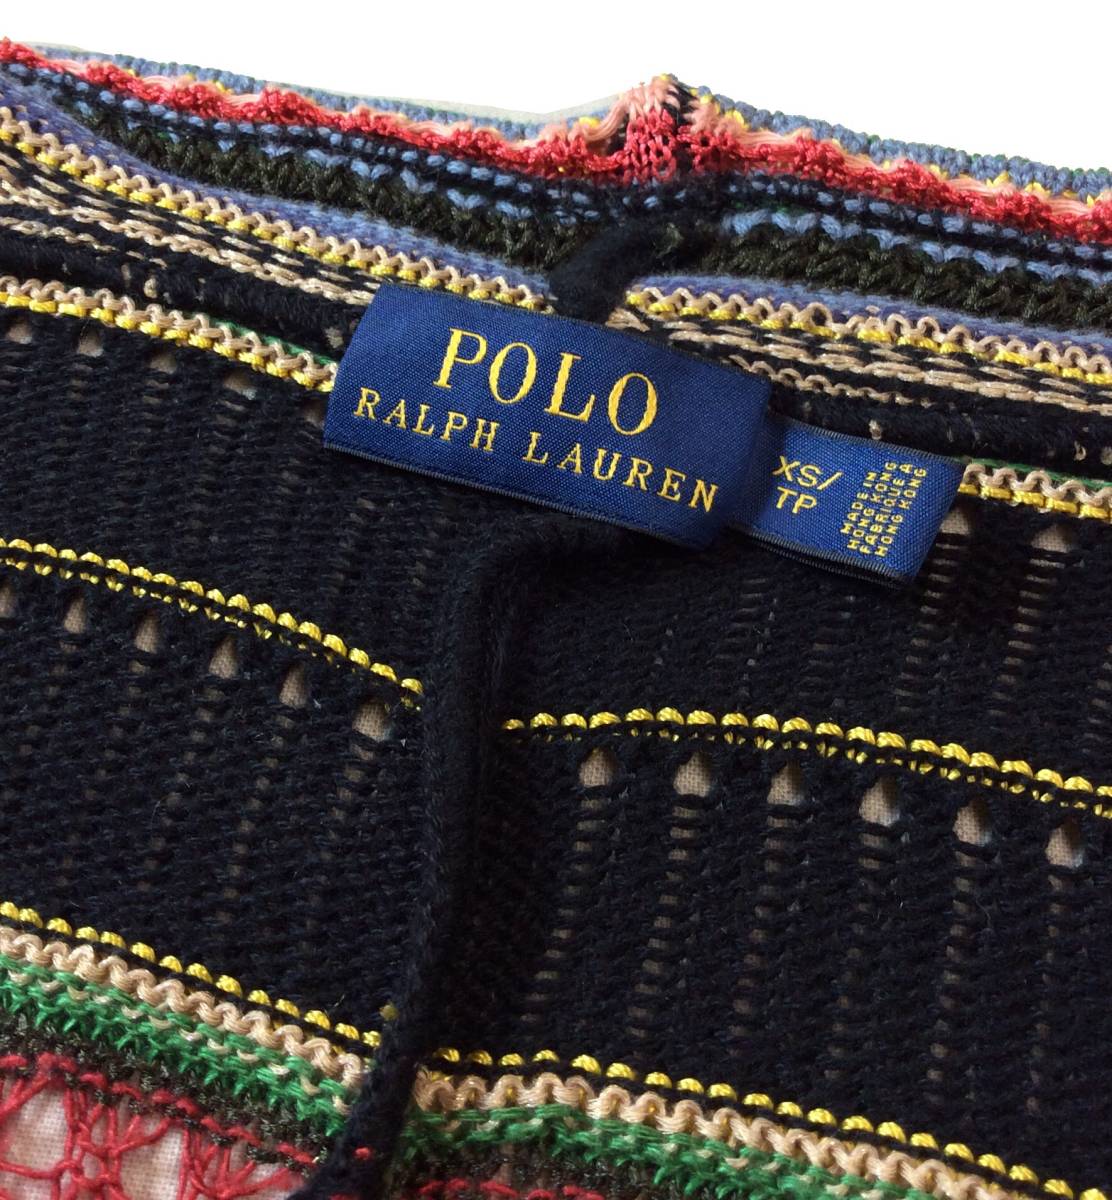 POLO RALPH LAUREN ラルフローレン ネイティブ ボーダー カーディガン セーター 羽織り コットン/リネン/シルク混 レディース XS_画像9